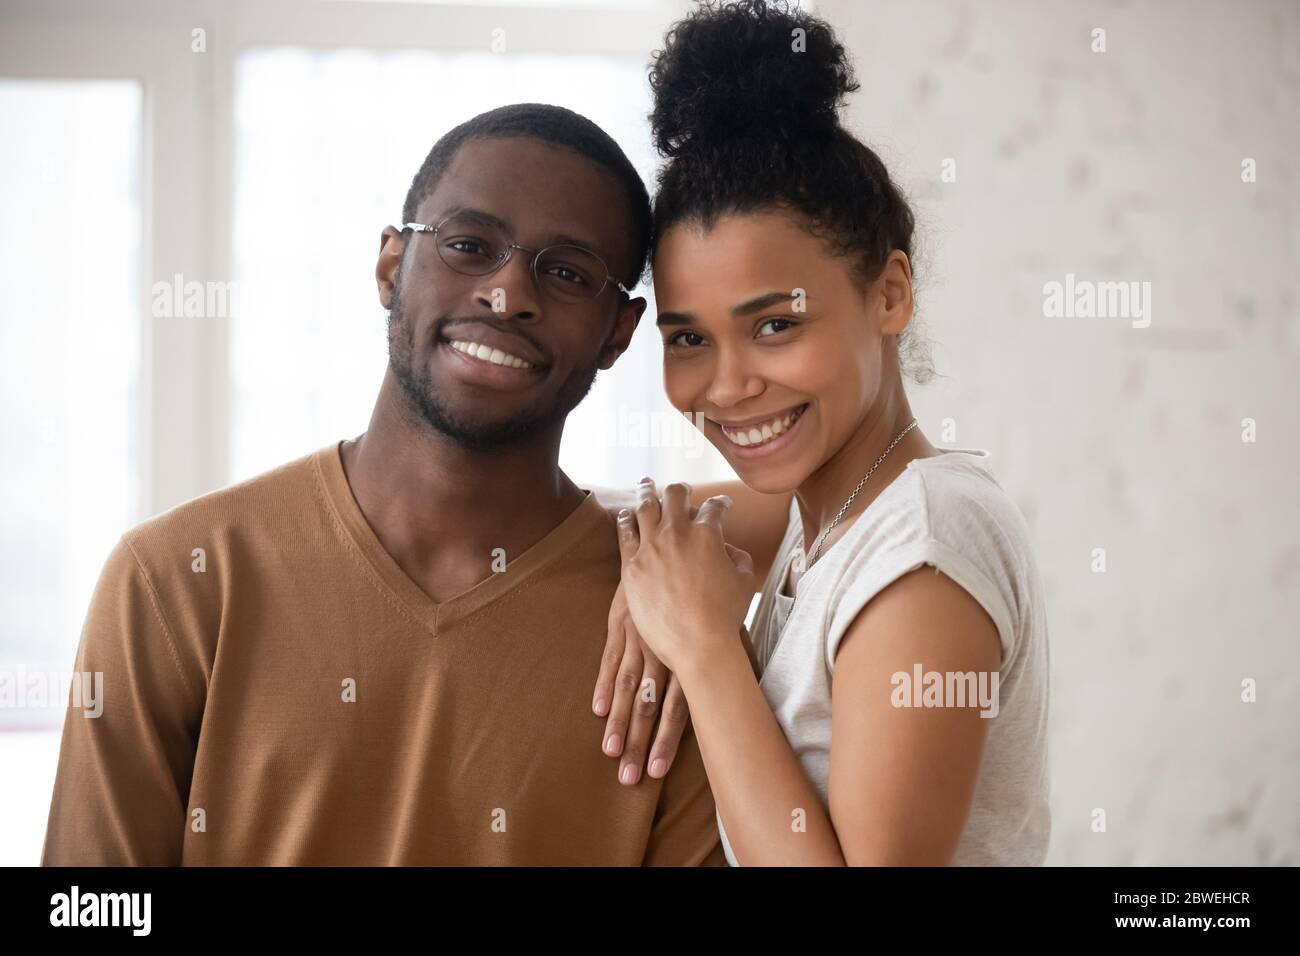 Kopf geschossen glücklich afroamerikanischen Ethnizität Familie Porträt Konzept Stockfoto